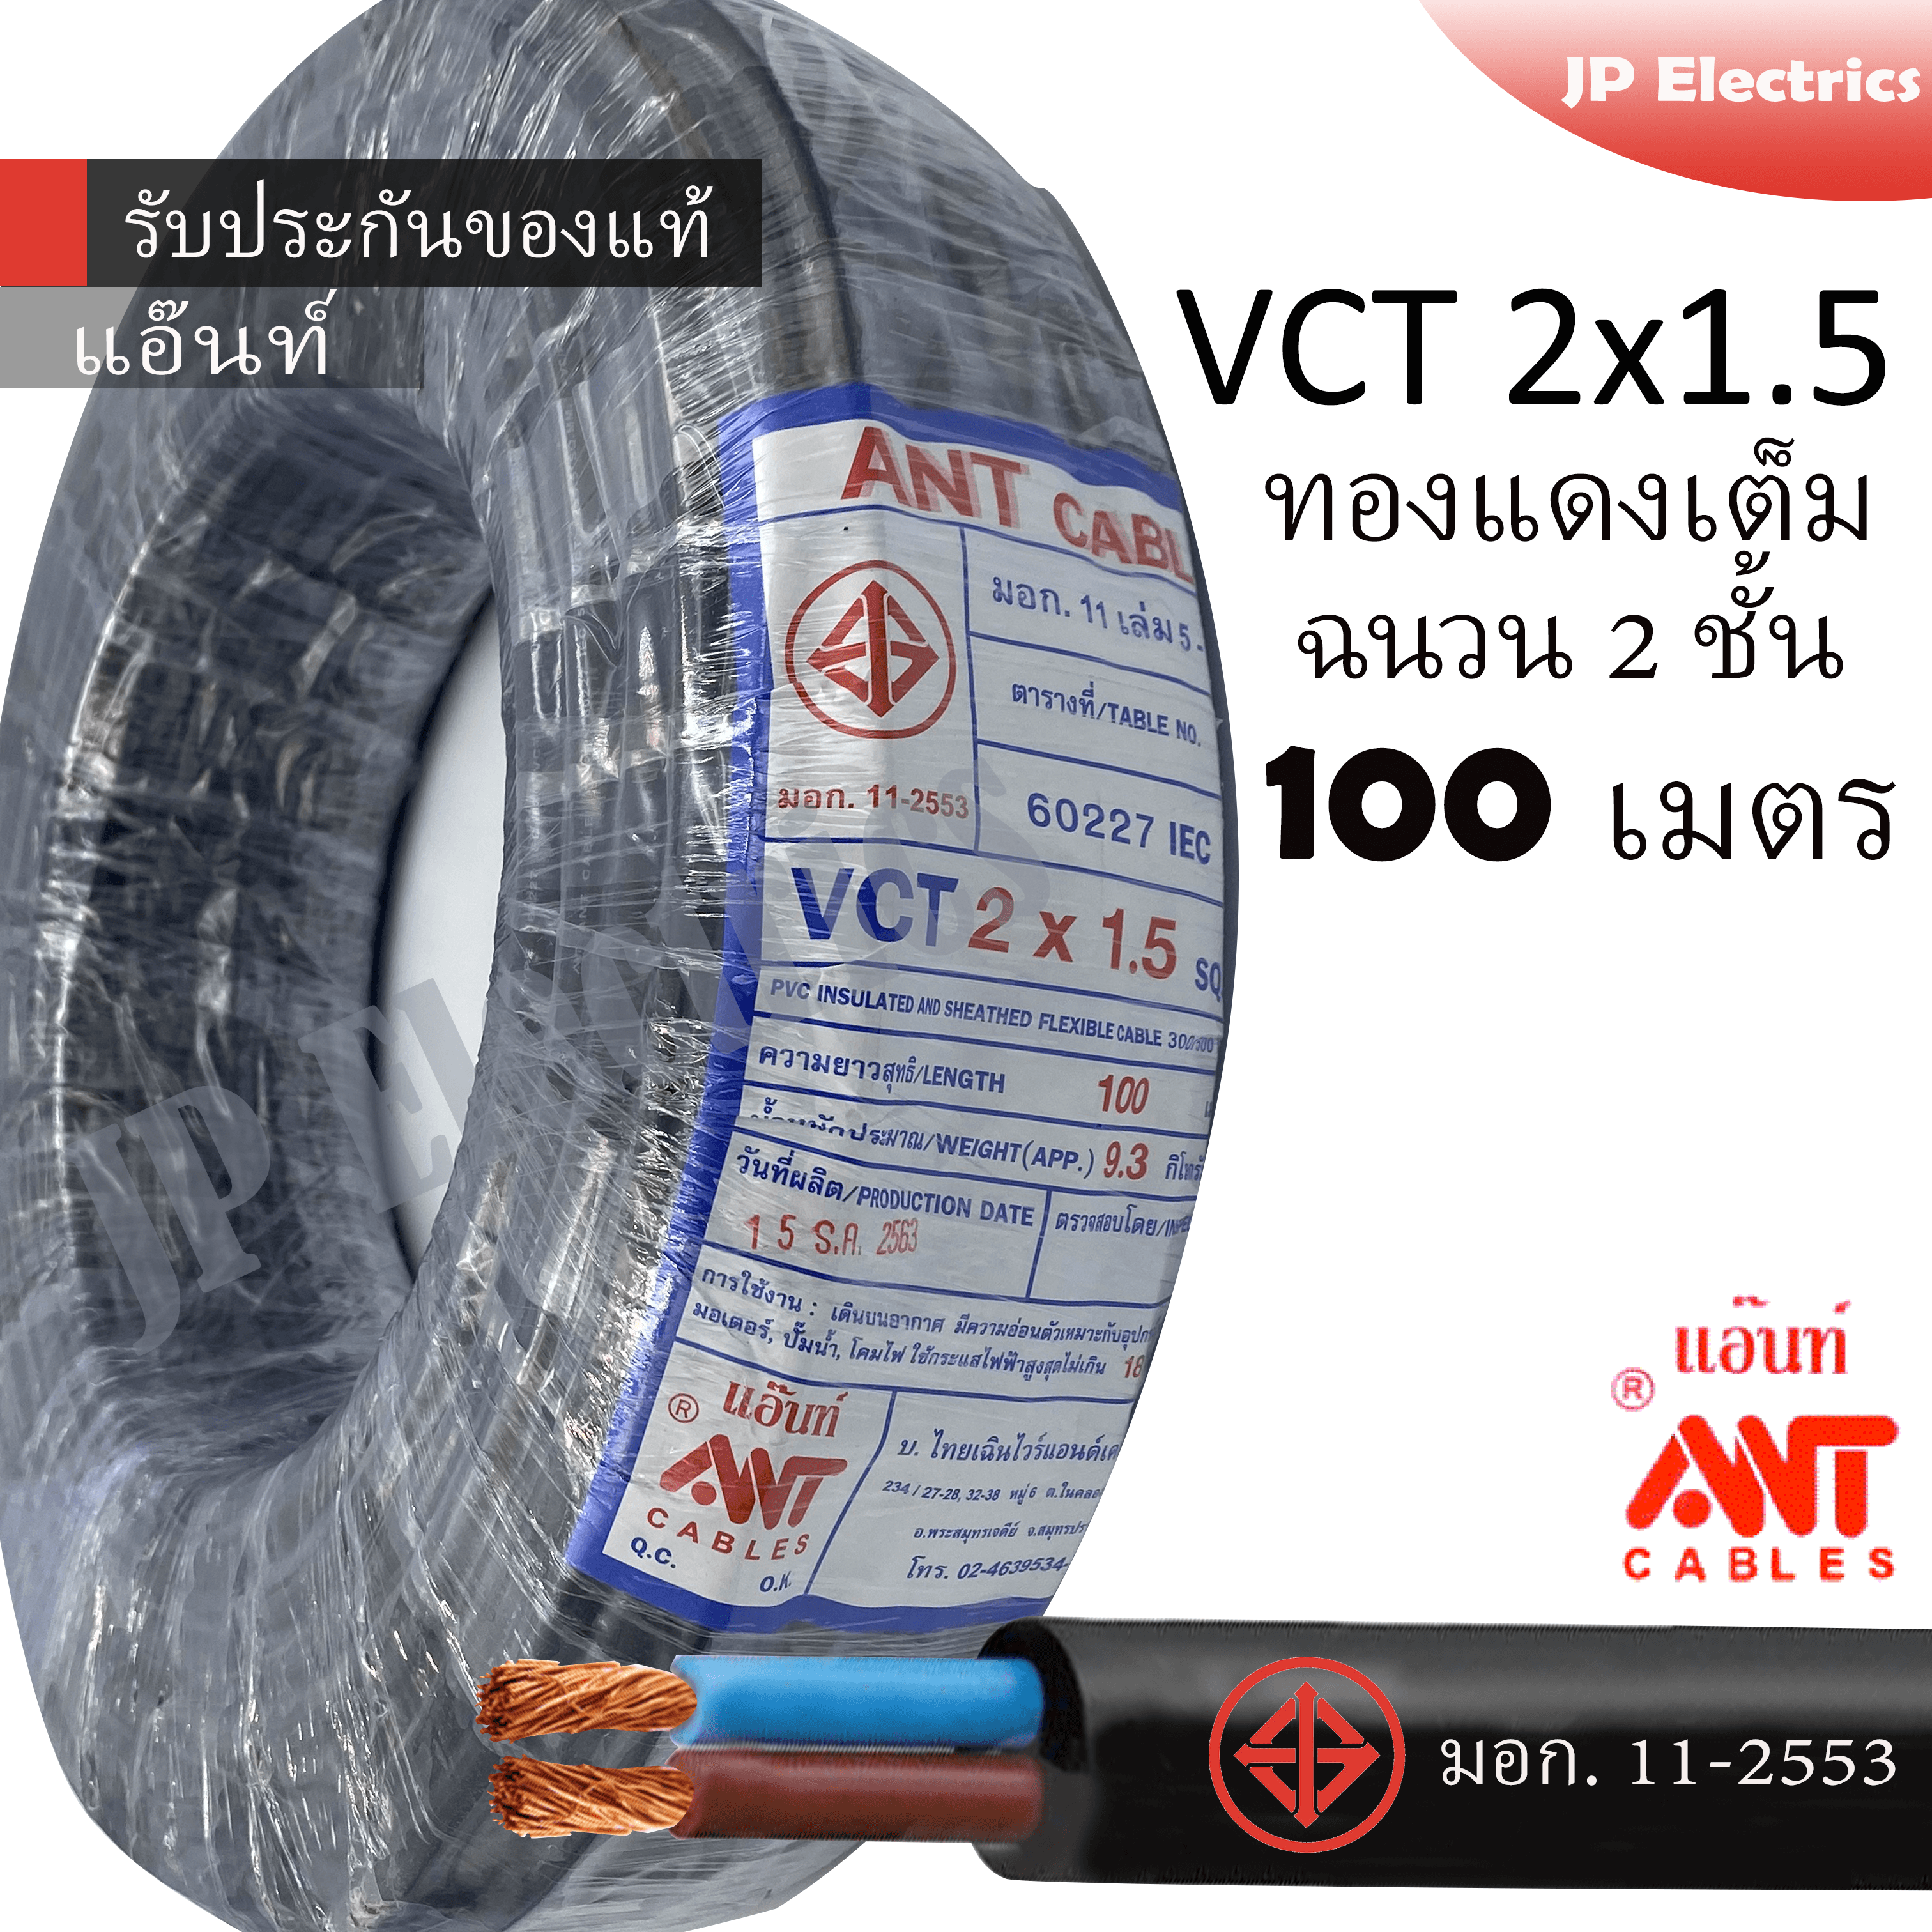 ANT สายไฟ VCT 2x1.5 ขด(100เมตร) ดำ มอก.